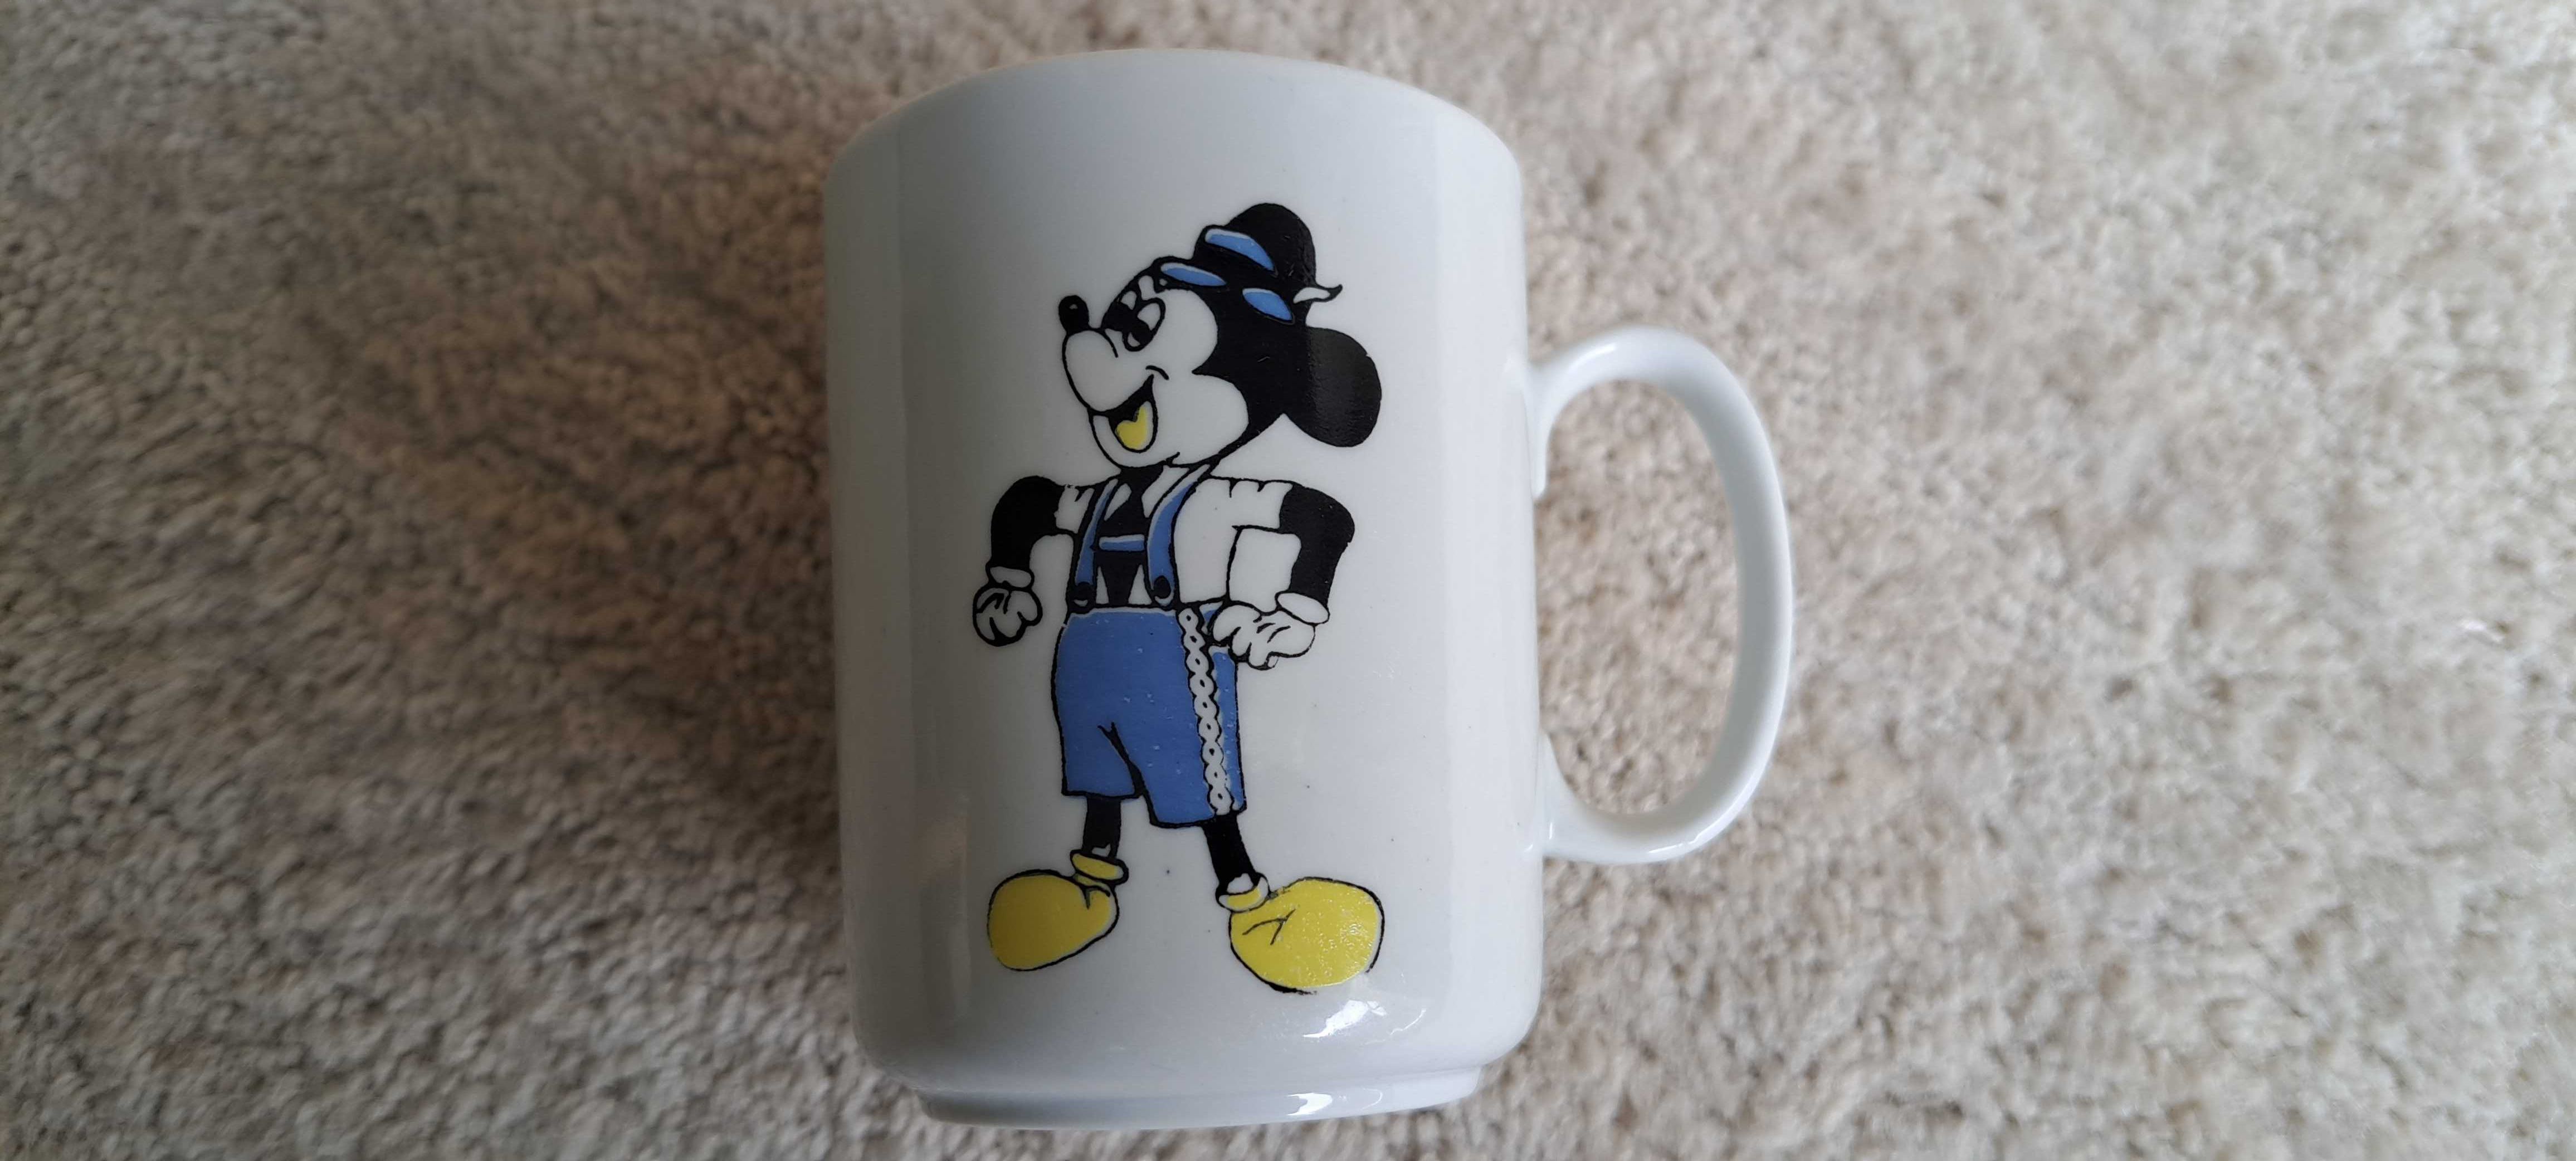 CHODZIEŻ porcelana kubek z lat 70-tych dziecięcy myszka Mickey, Donald